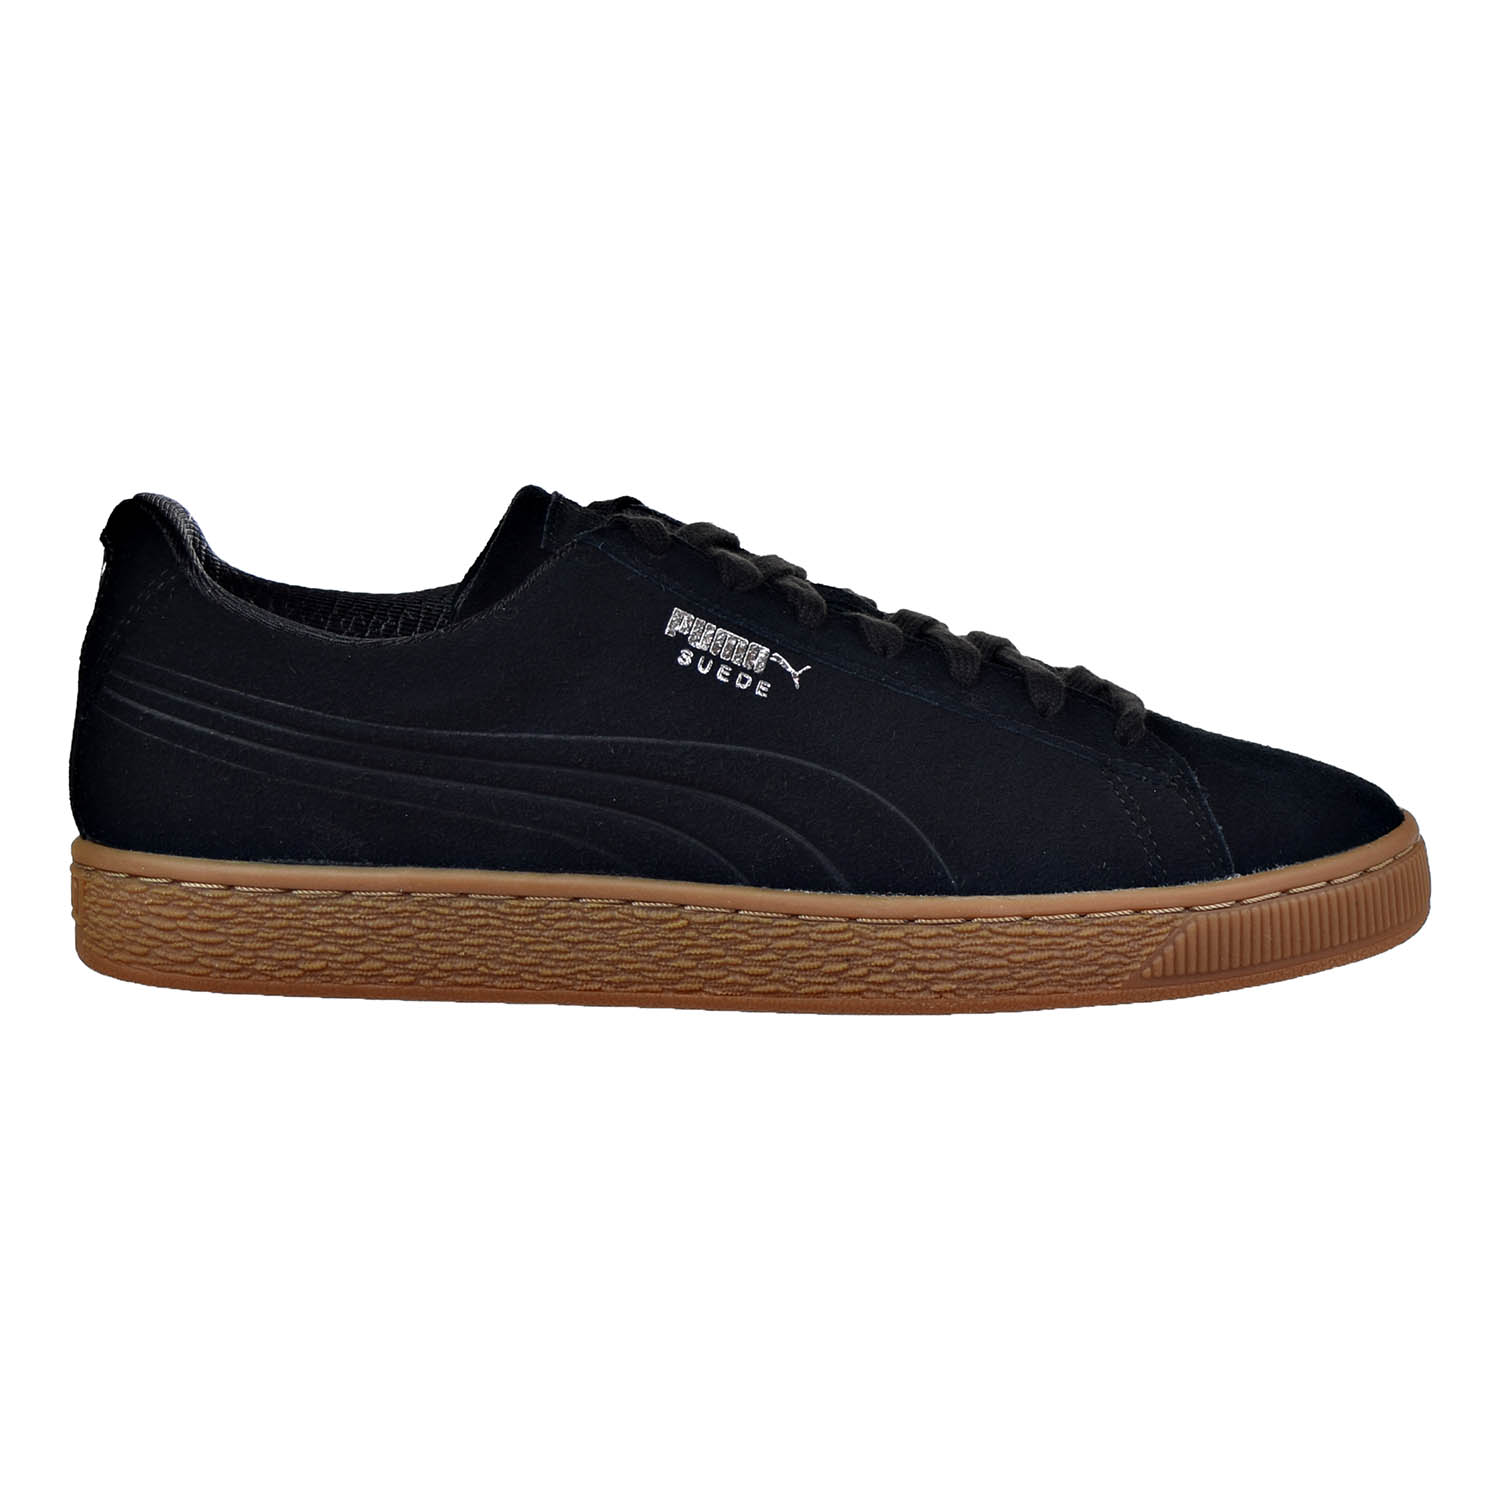 Shoes Puma Black-Glacier Grey 361098-02 